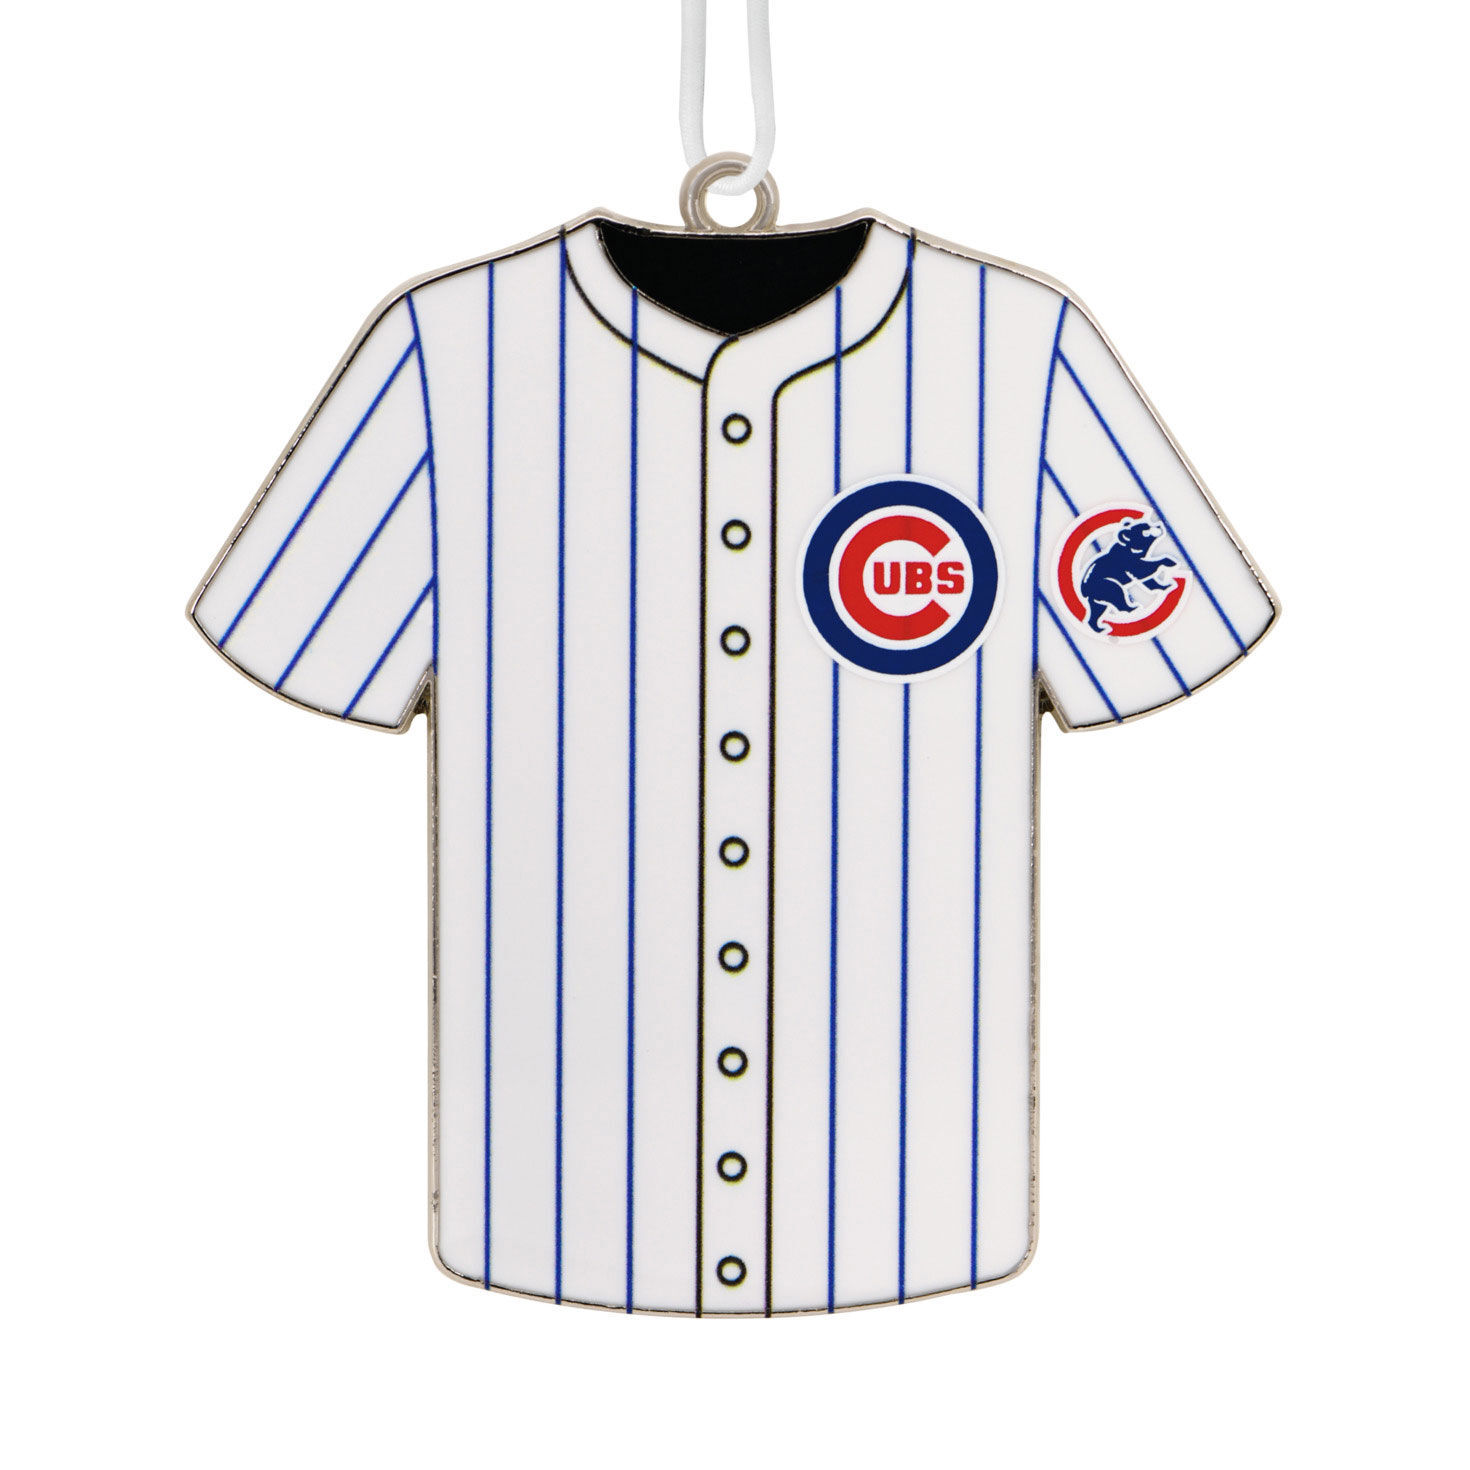 Chicago Cubs jersey deals